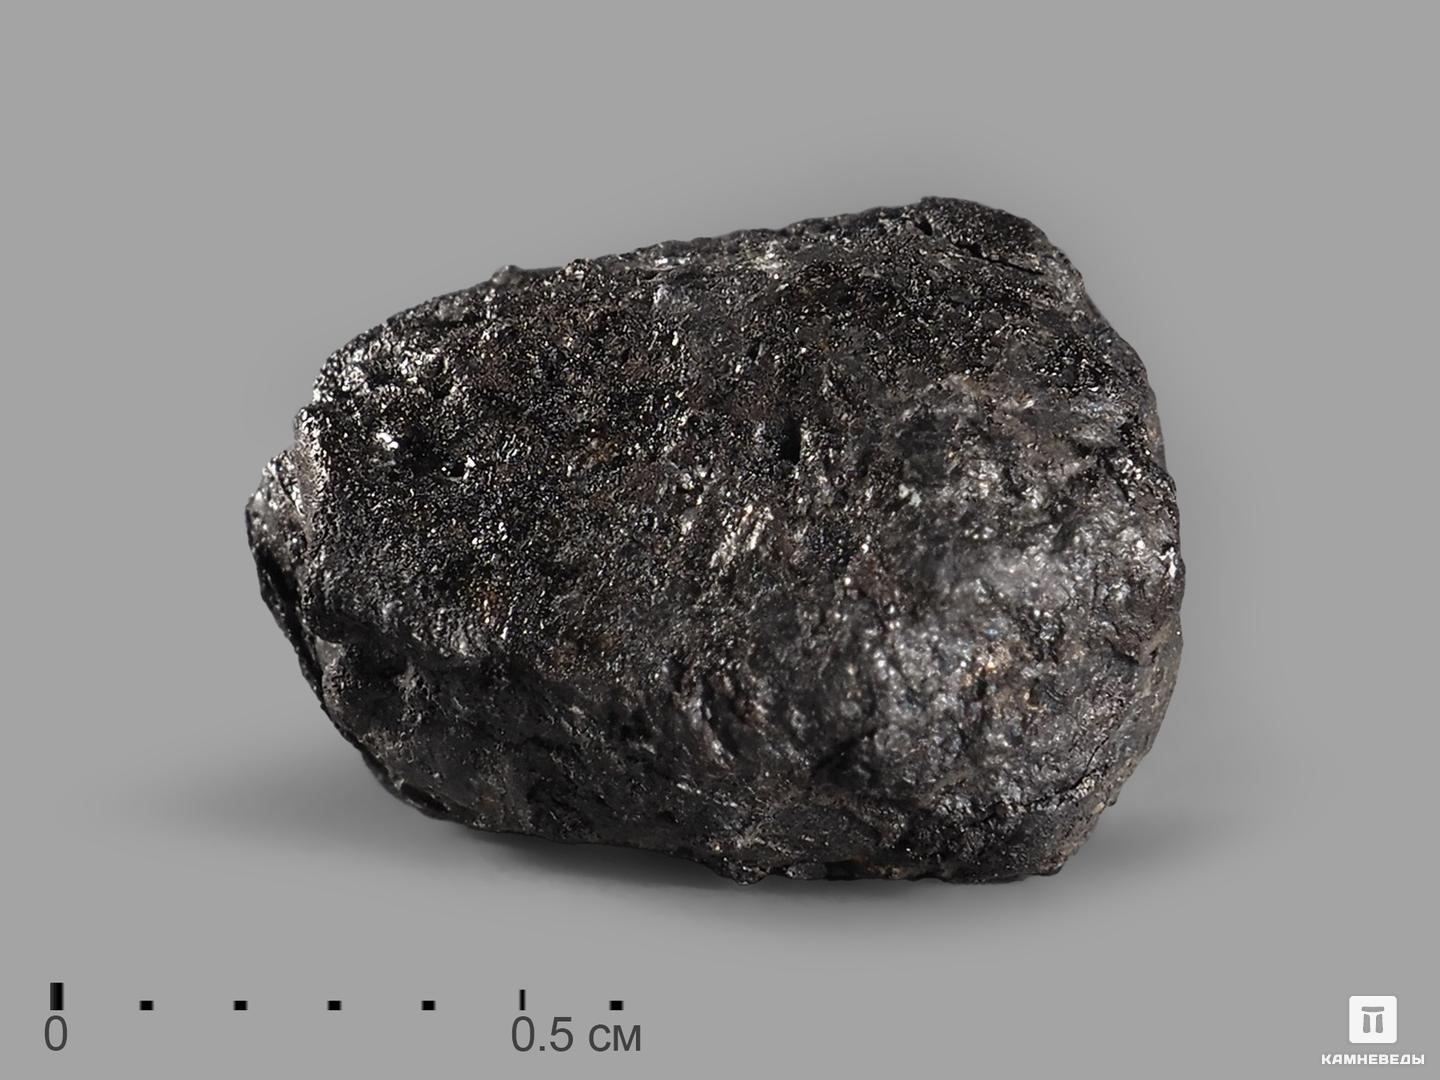 Метеорит Челябинск LL5, 1-1,2 см (0,8-1 г)